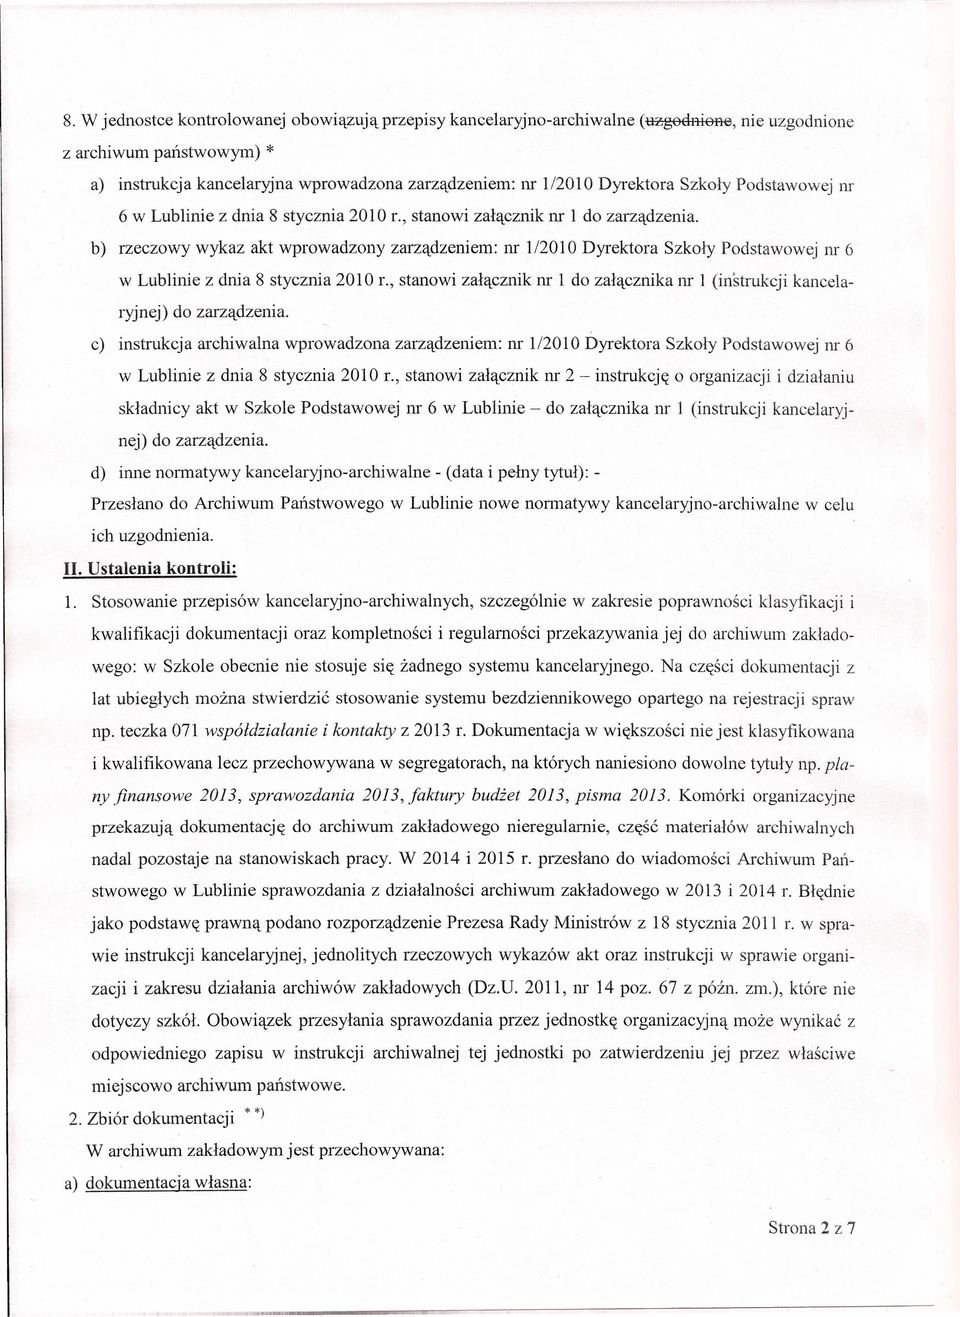 b) rzeczowy wykaz akt wprowadzony zarządzeniem: nr 1/2010 Dyrektora Szkoły Podstawowej m 6 w Lublinie z dnia 8 stycznia 2010 L, stanowi załącznik nr 1 do załącznika m I (instrukcji kancelaryjnej) do